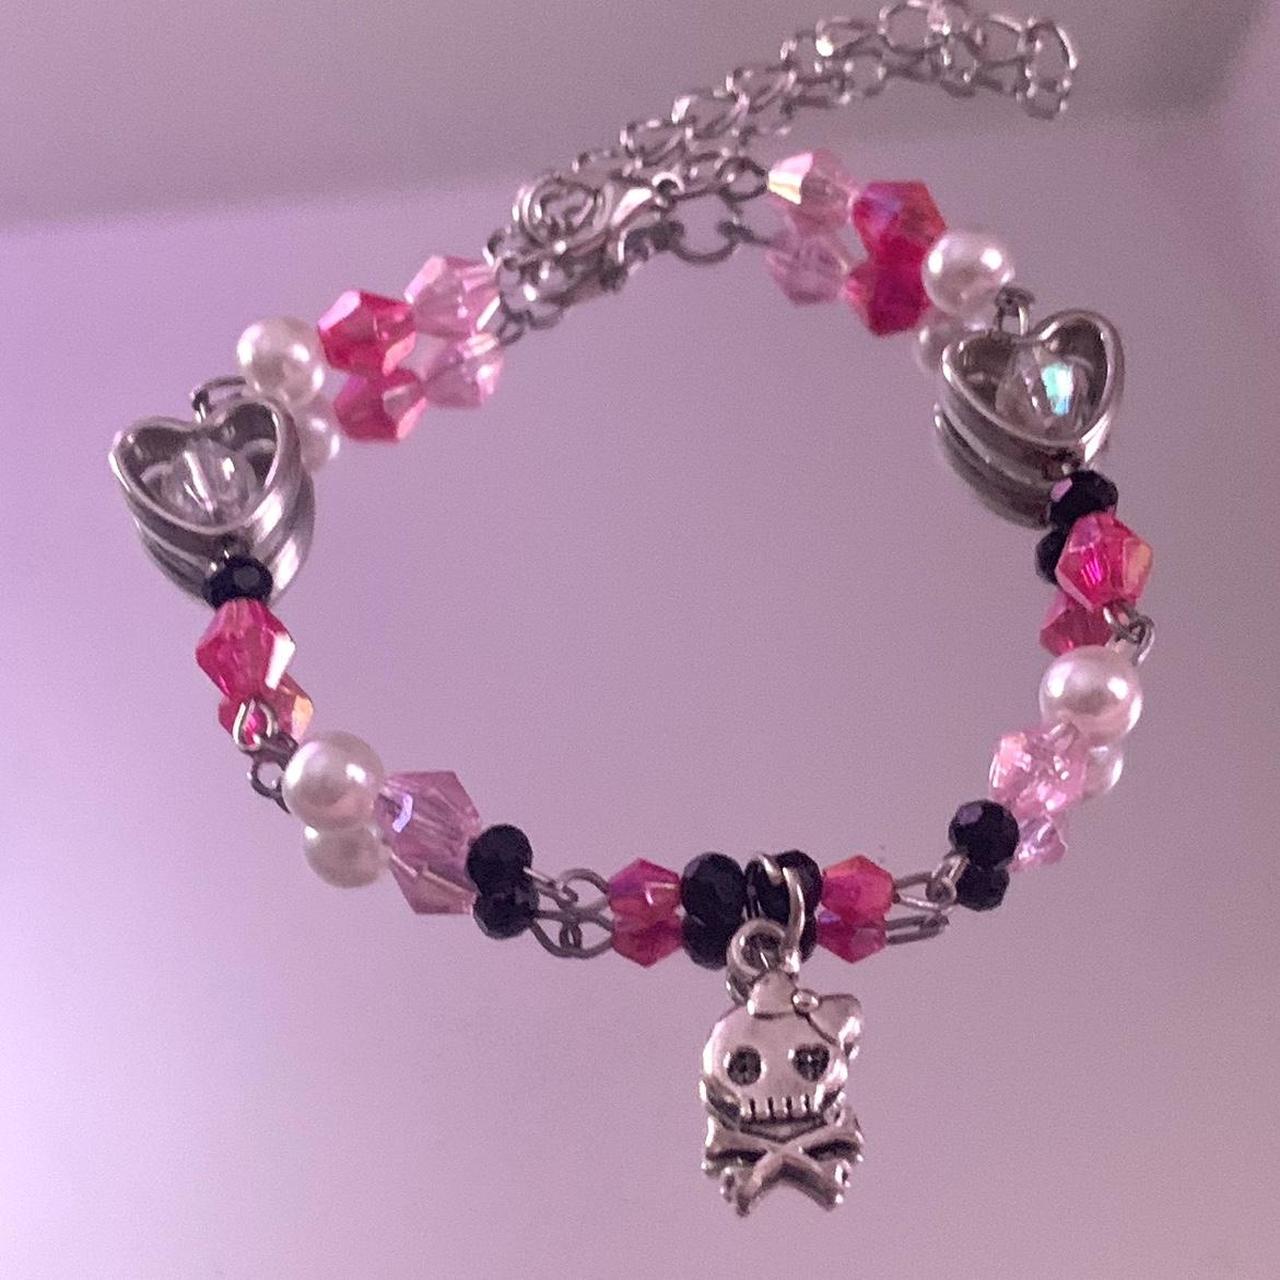 pink and black skullette charm bracelet 💗☠️🖤 •... - Depop